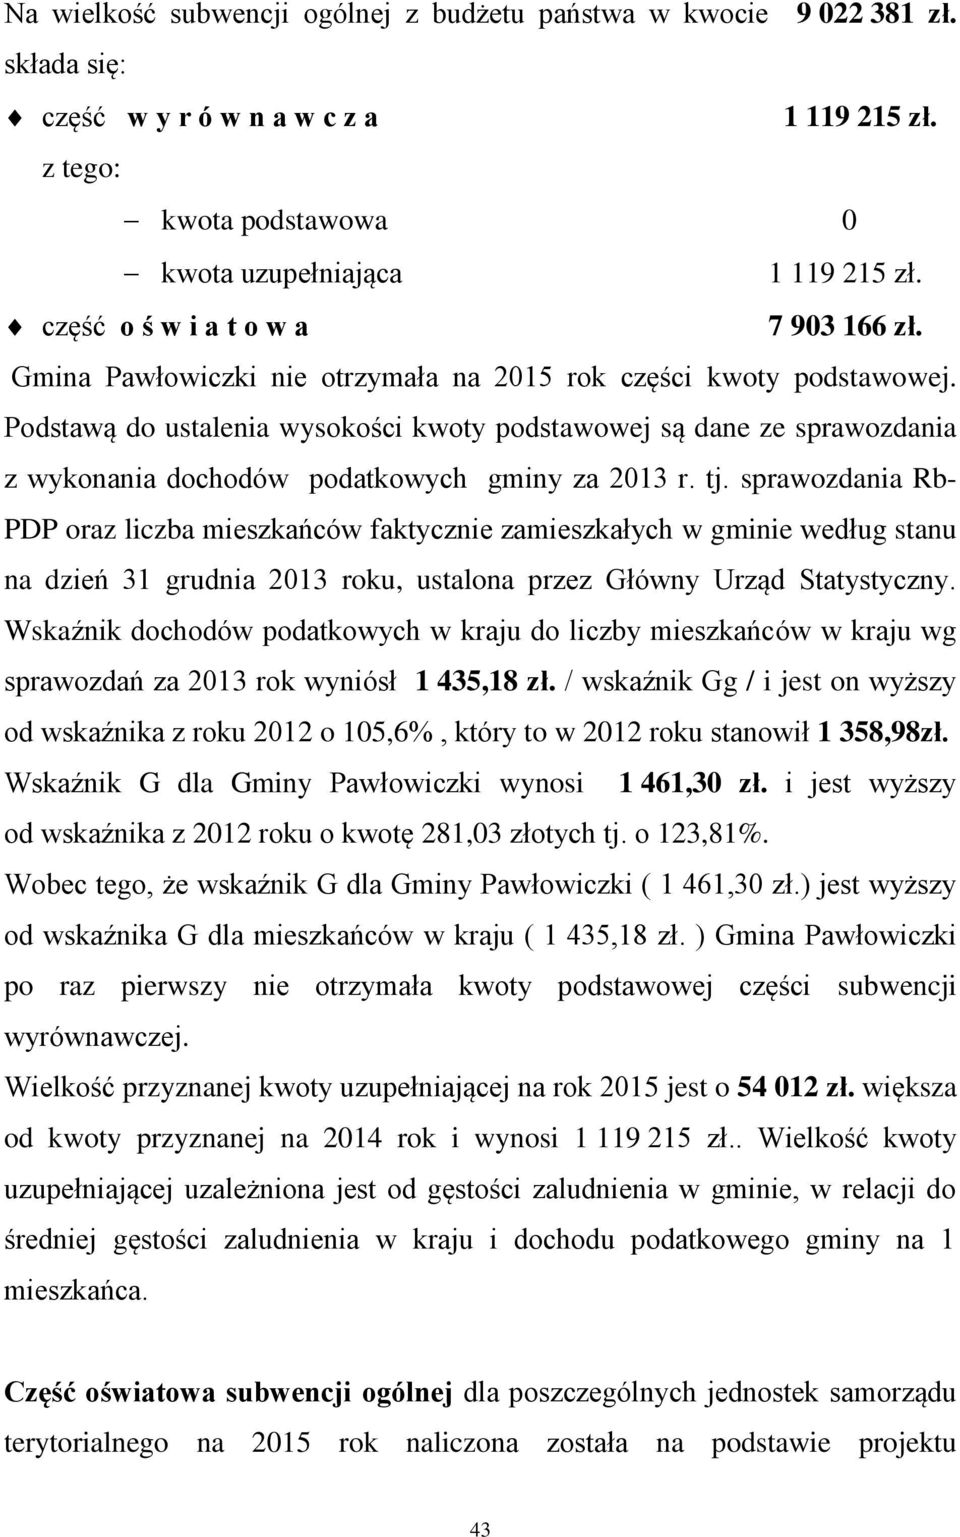 Podstawą do ustalenia wysokości kwoty podstawowej są dane ze sprawozdania z wykonania dochodów podatkowych gminy za 2013 r. tj.